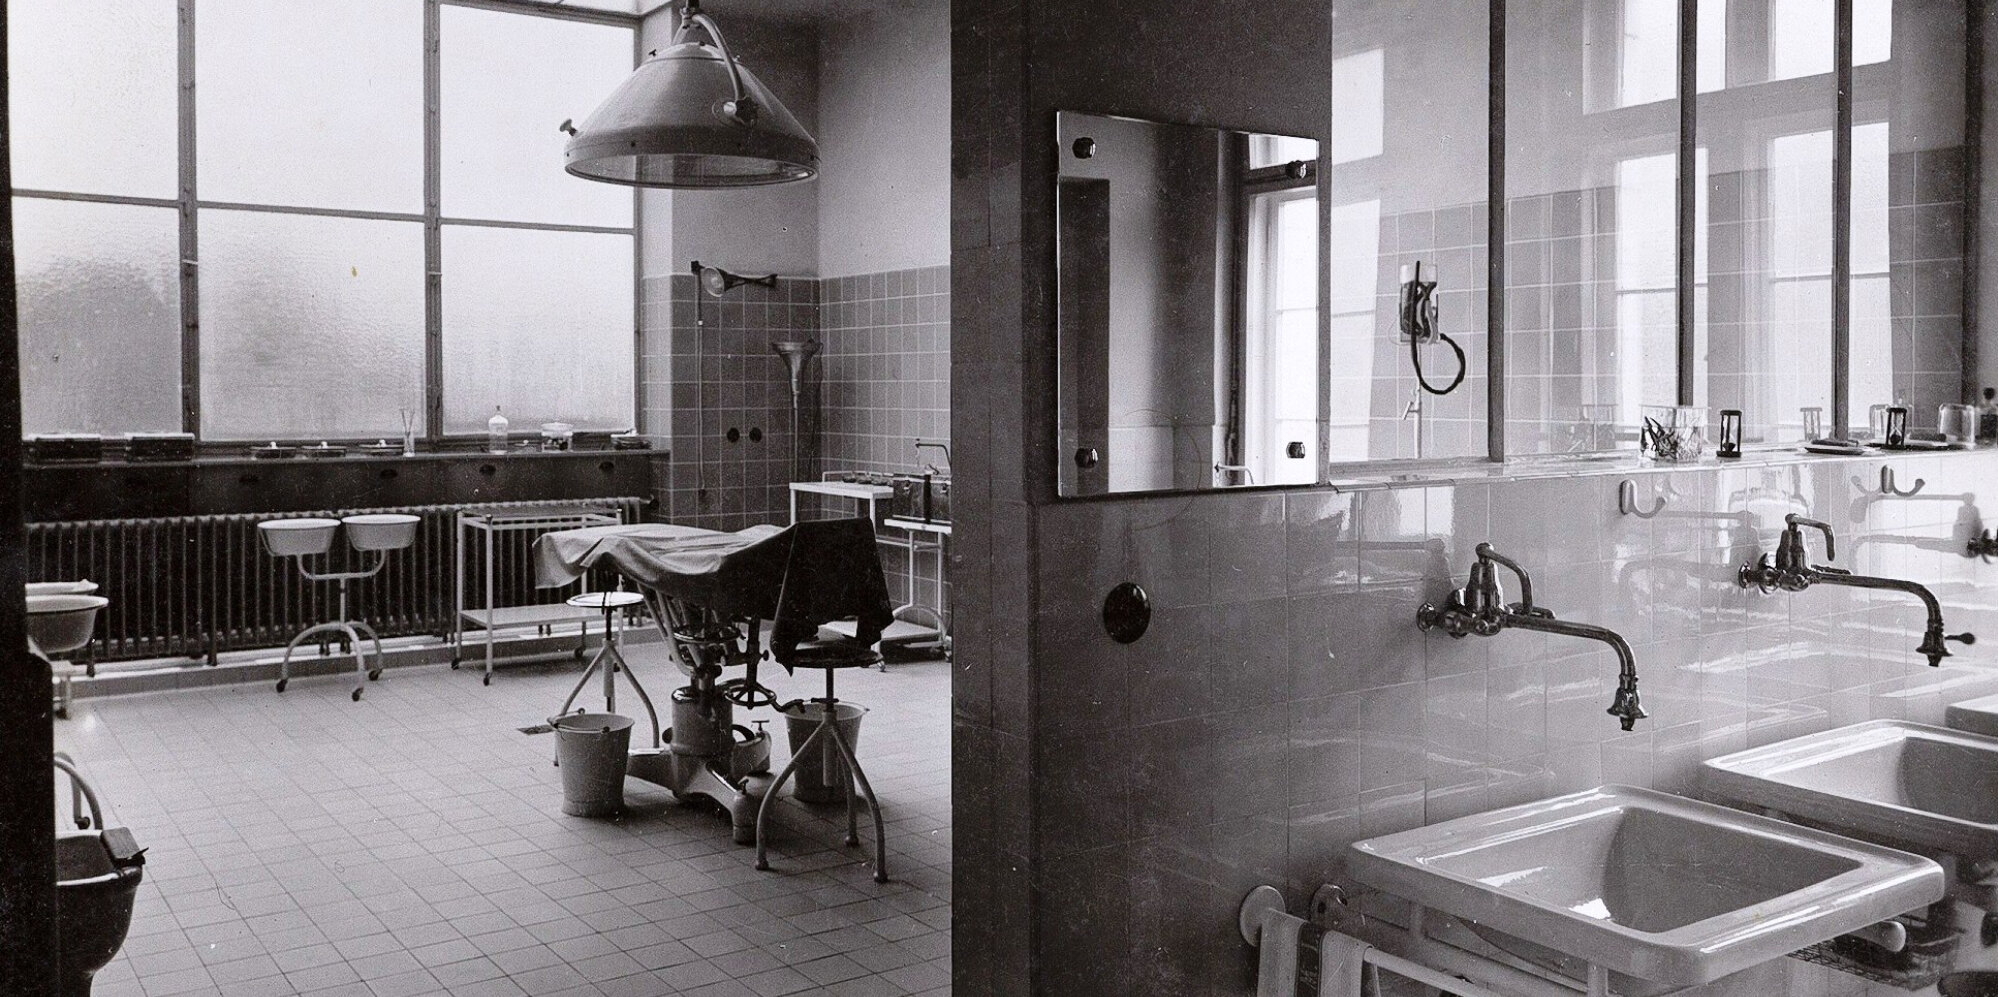 Schwarz-weiß Aufnahme eines früheren OP-Saals mit Handwaschbecken und weiterer OP-Ausstattung.